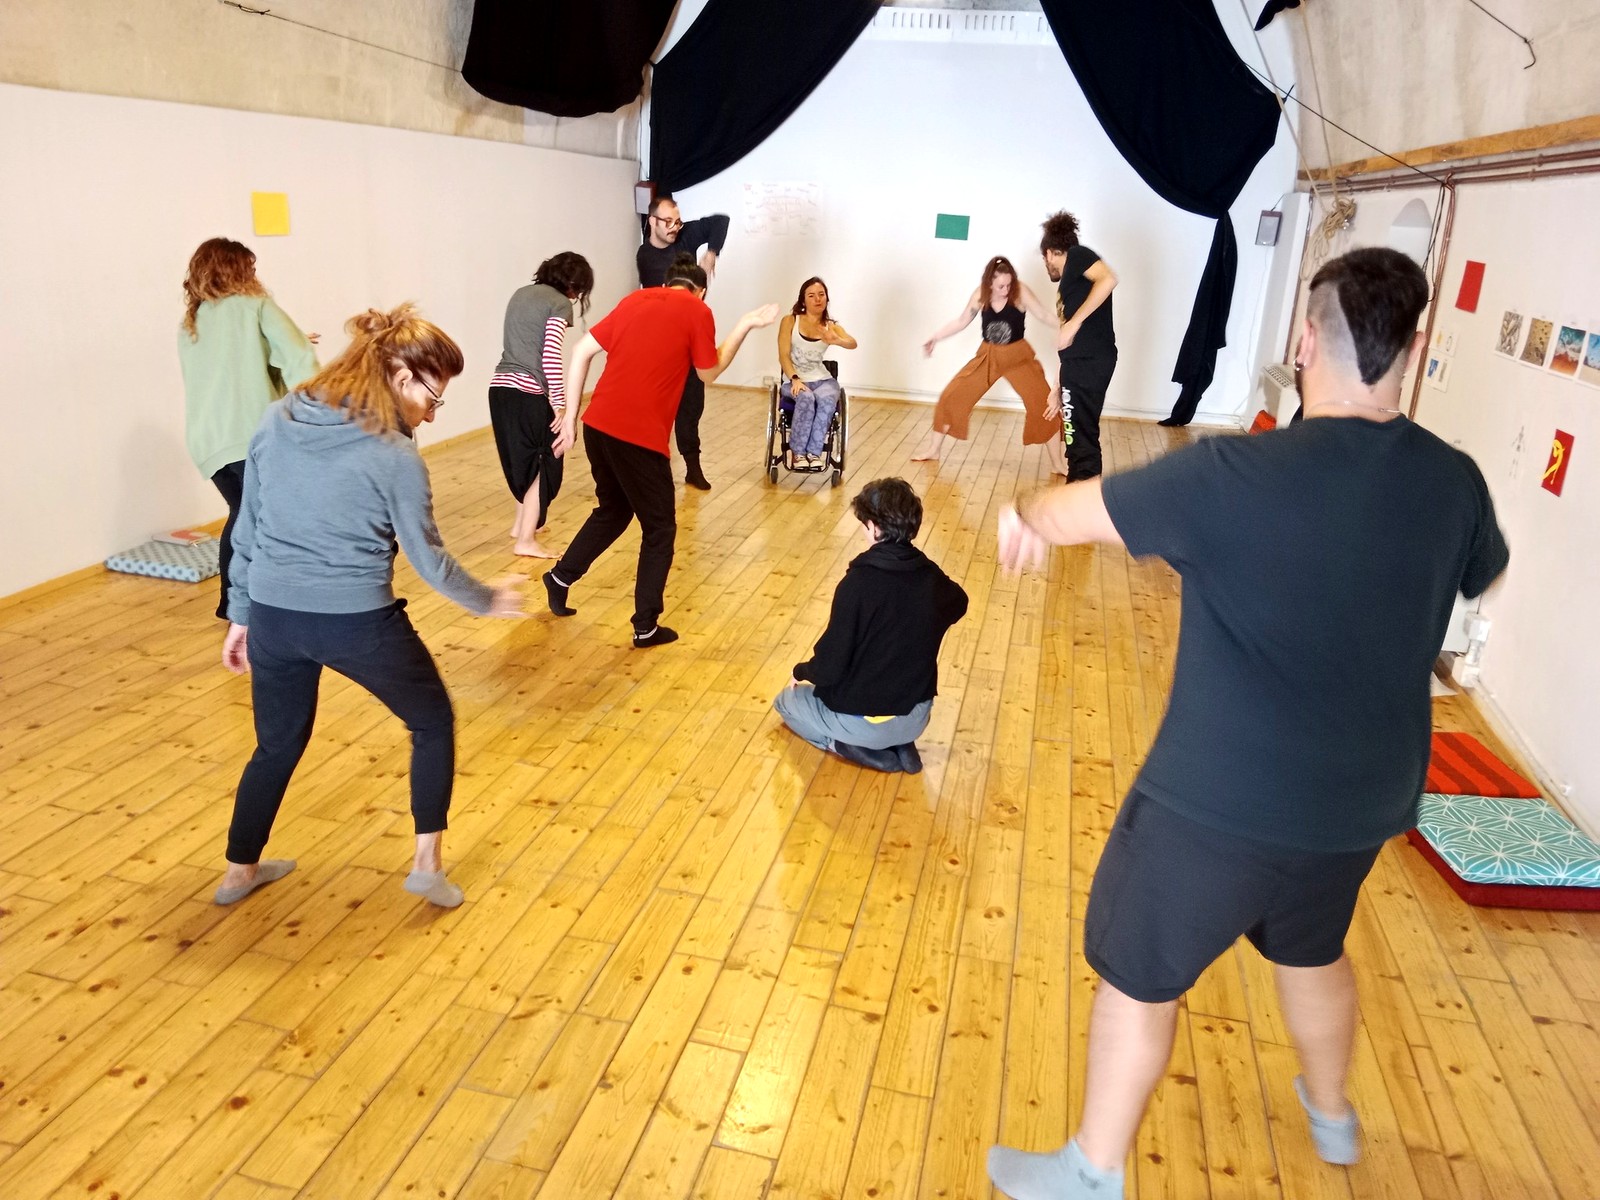 Diversità in scena: a Matera formazione intensiva per artisti ed educatori di danza e teatro. Dal 27 al 30 marzo un workshop a cura di Stopgap Dance Company